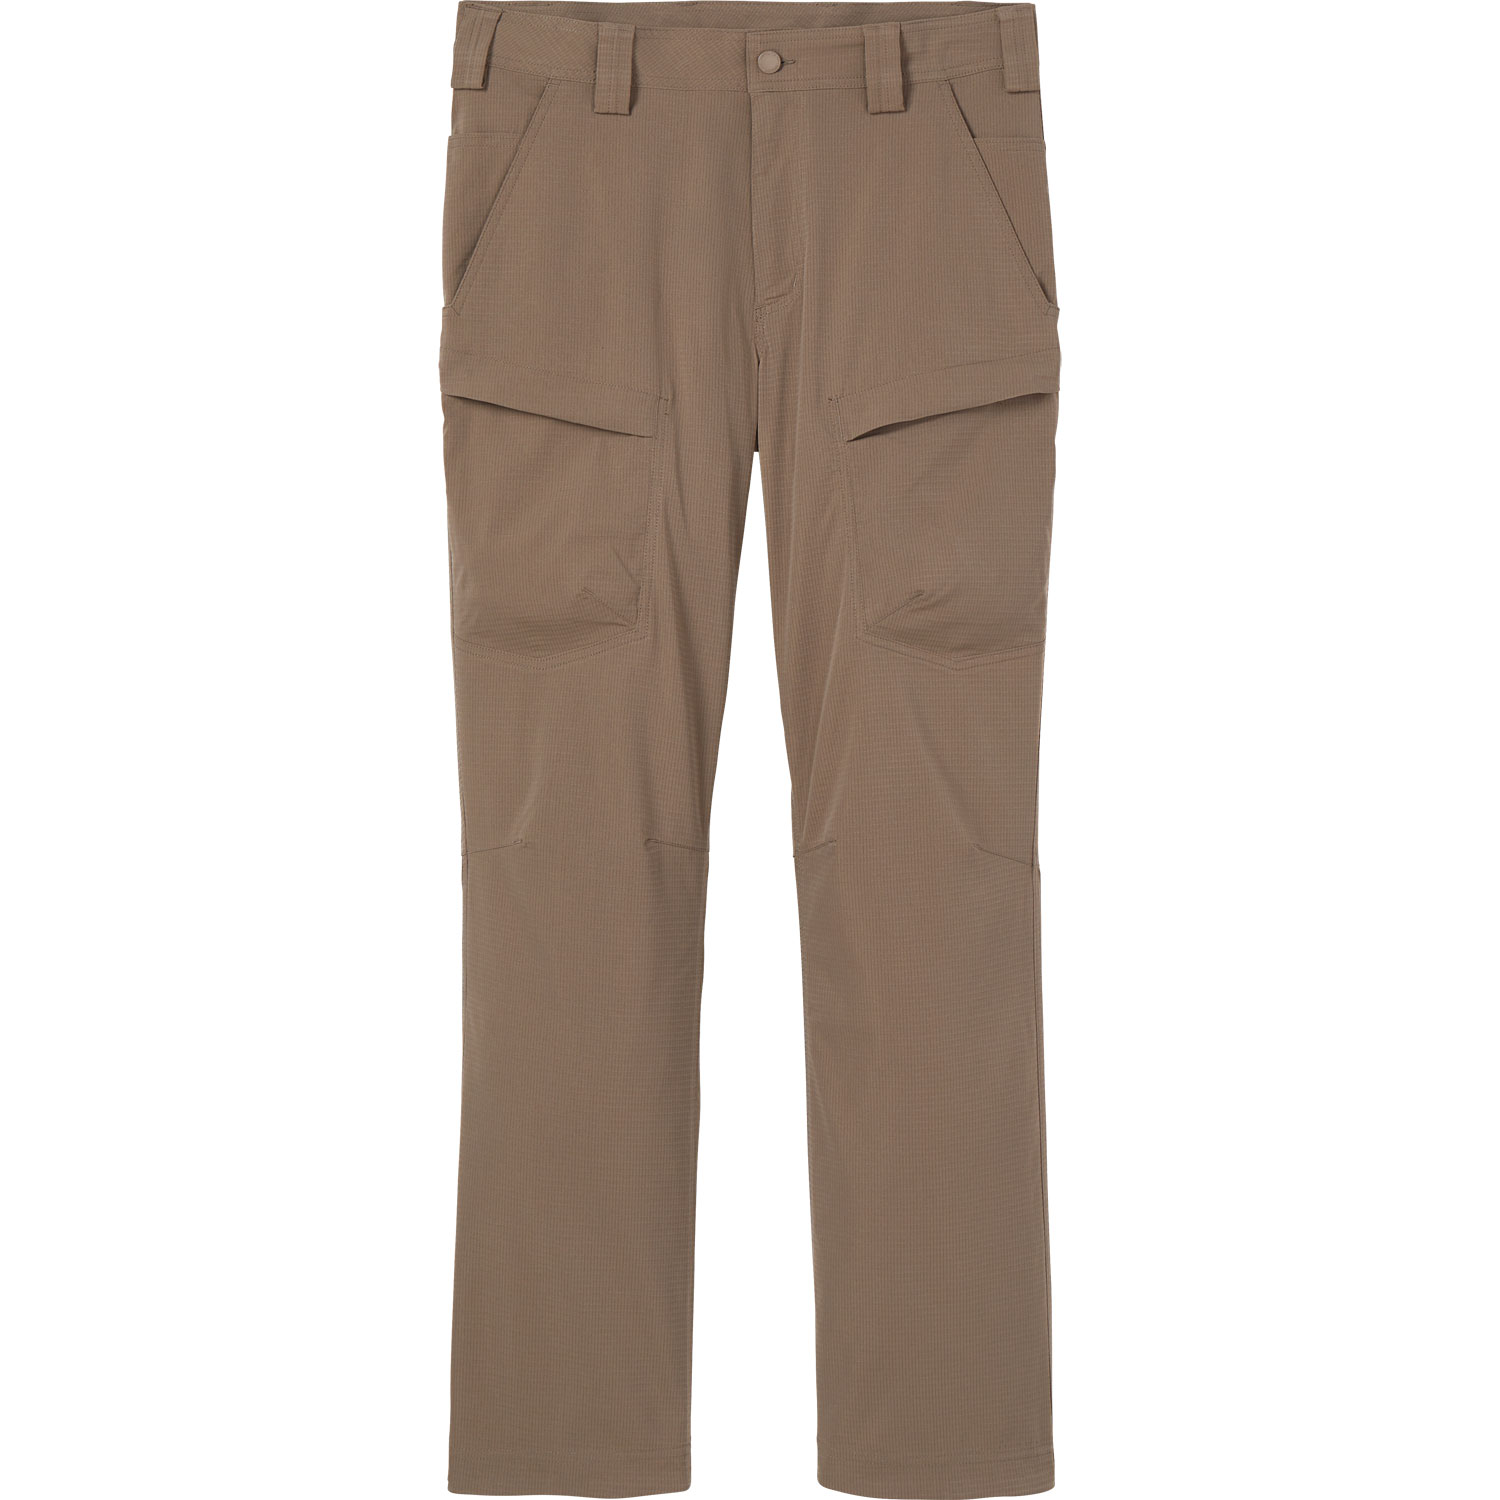 Men's Breezeshooter Standard Fit Work Pants